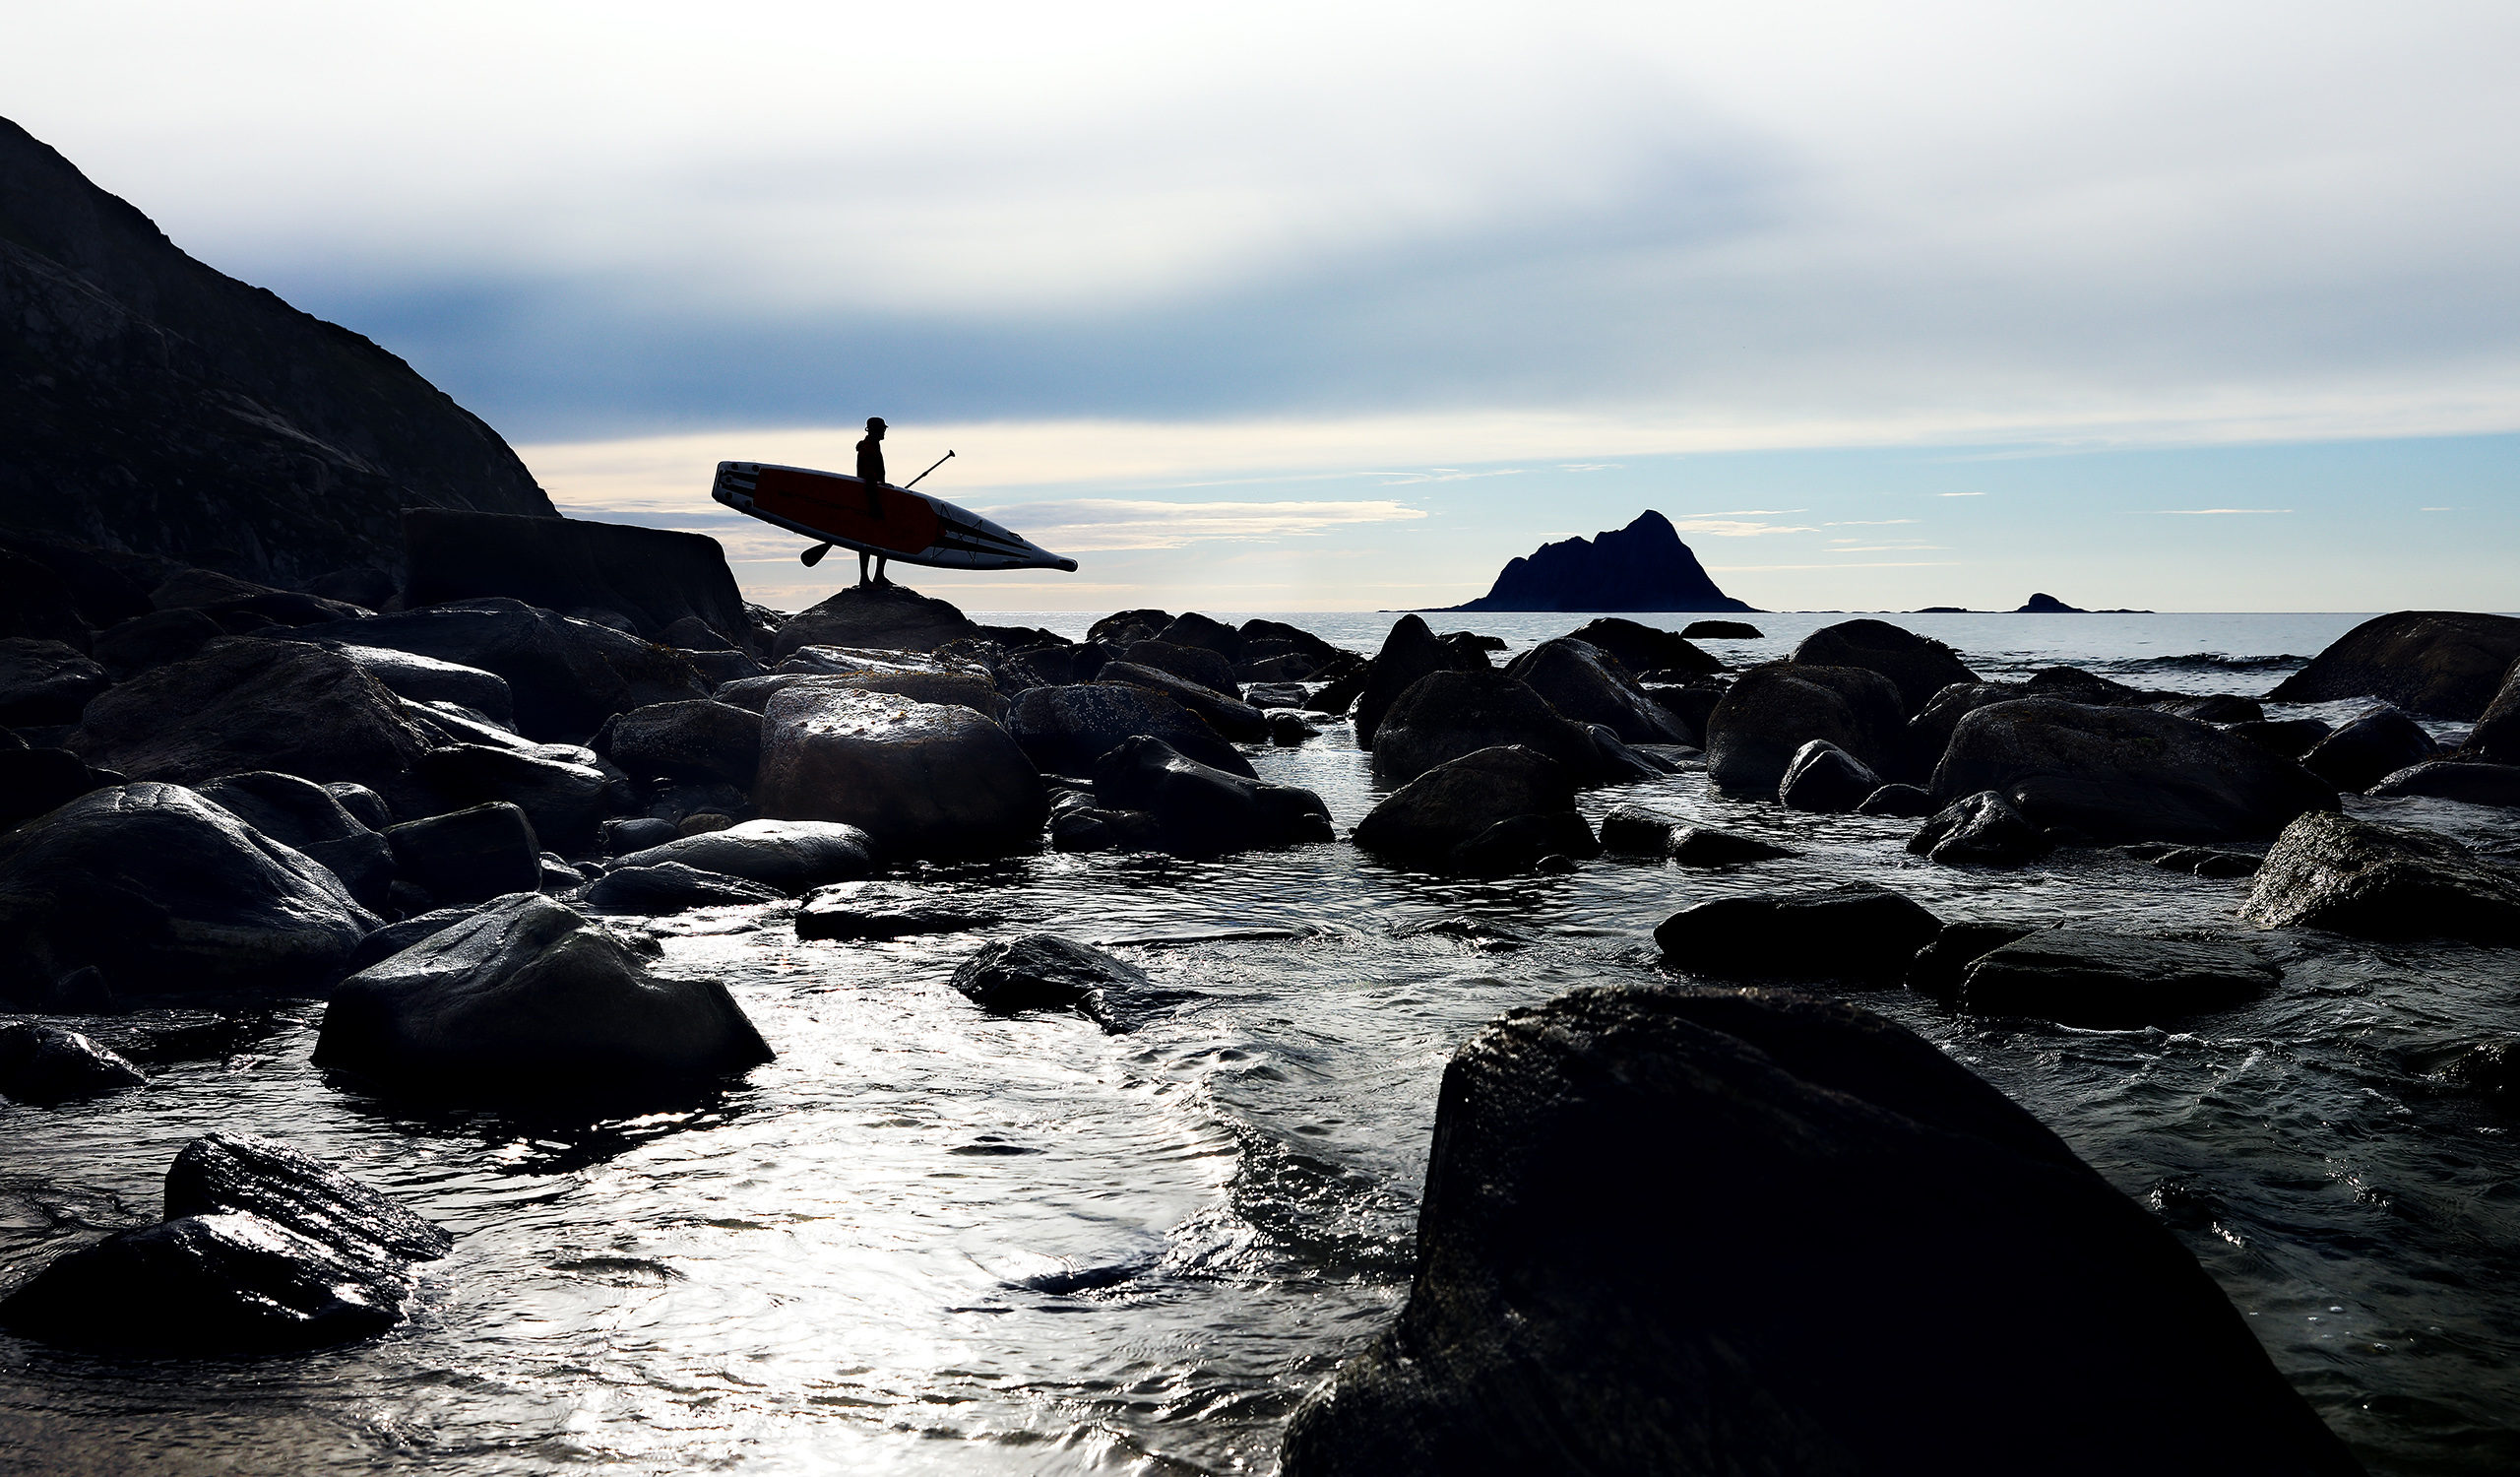 Ein Stehpaddler schaut in der norwegischen Arktis rund um die Insel Rebbenesoya aufs Meer hinaus. Das mystische Wetter der norwegischen Arktis bietet ein emotionales Ambiente für jeden, der bereit ist, sich in die Ferne zu wagen. Planetvisible hat eine 14-tägige Reise in die nördliche norwegische Arktis unternommen, um die Fähigkeit der Bretter zu testen, den Wellengang des offenen Ozeans mit mehr als 130 kg an Bord zu überstehen. Fotografie von Justin Hession Fotografie